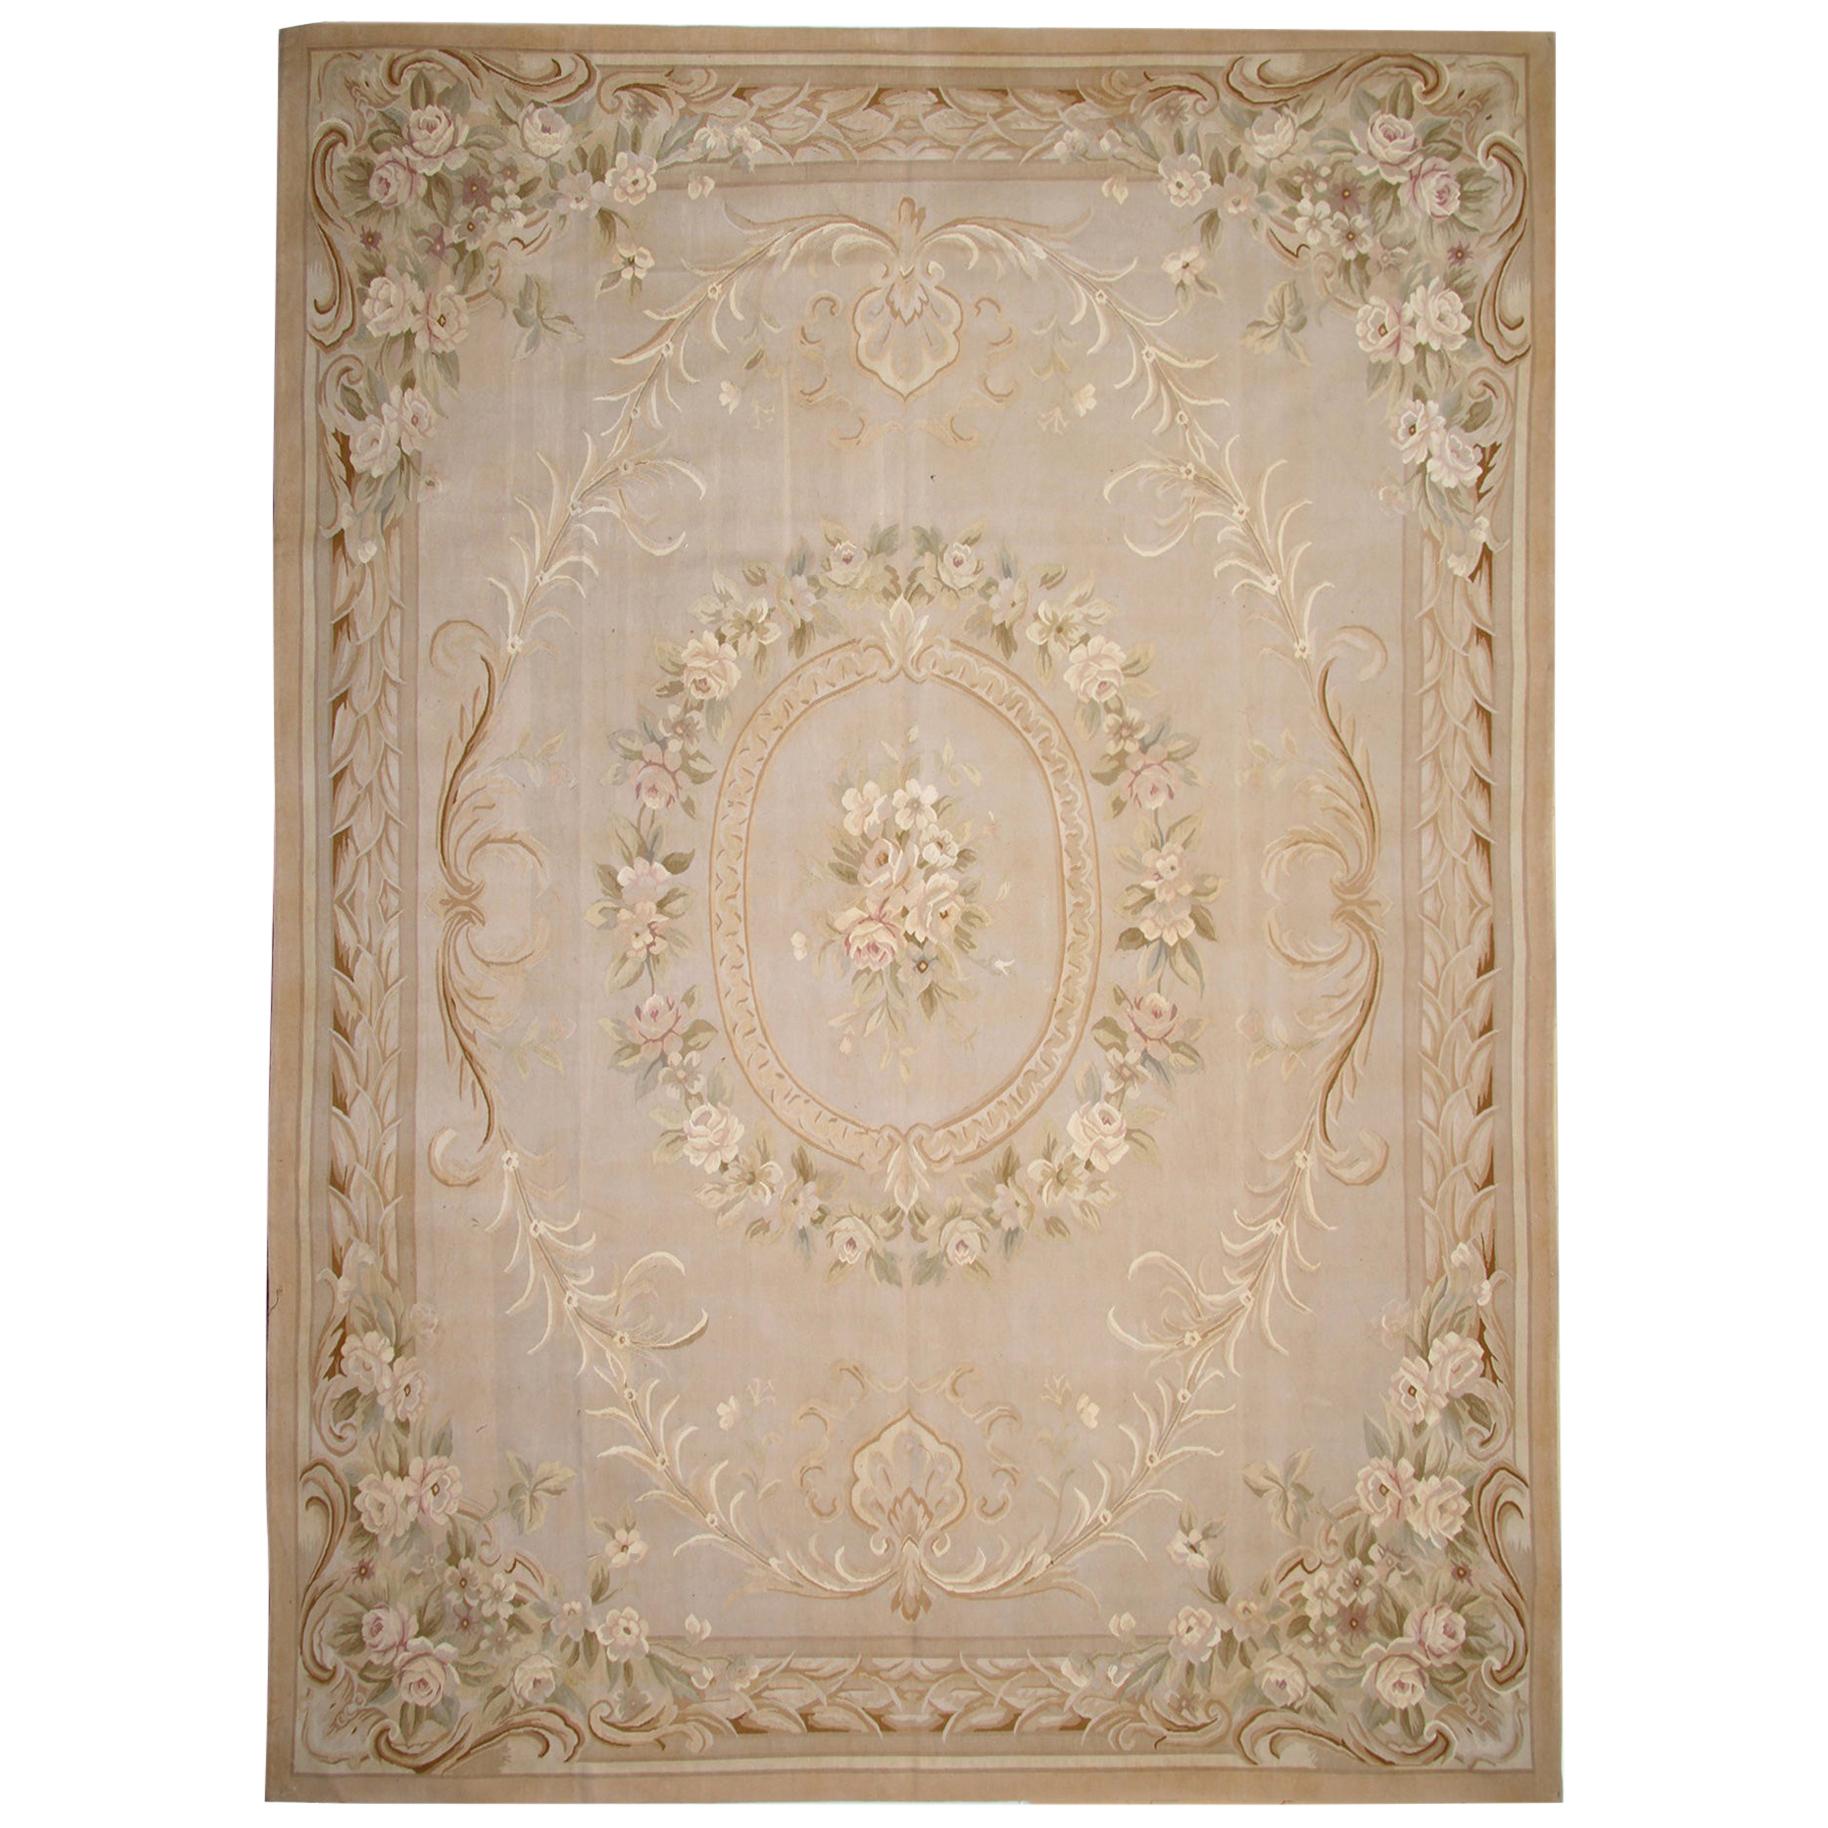 Teppich im Aubusson-Stil, handgewebter Teppich aus Wolle